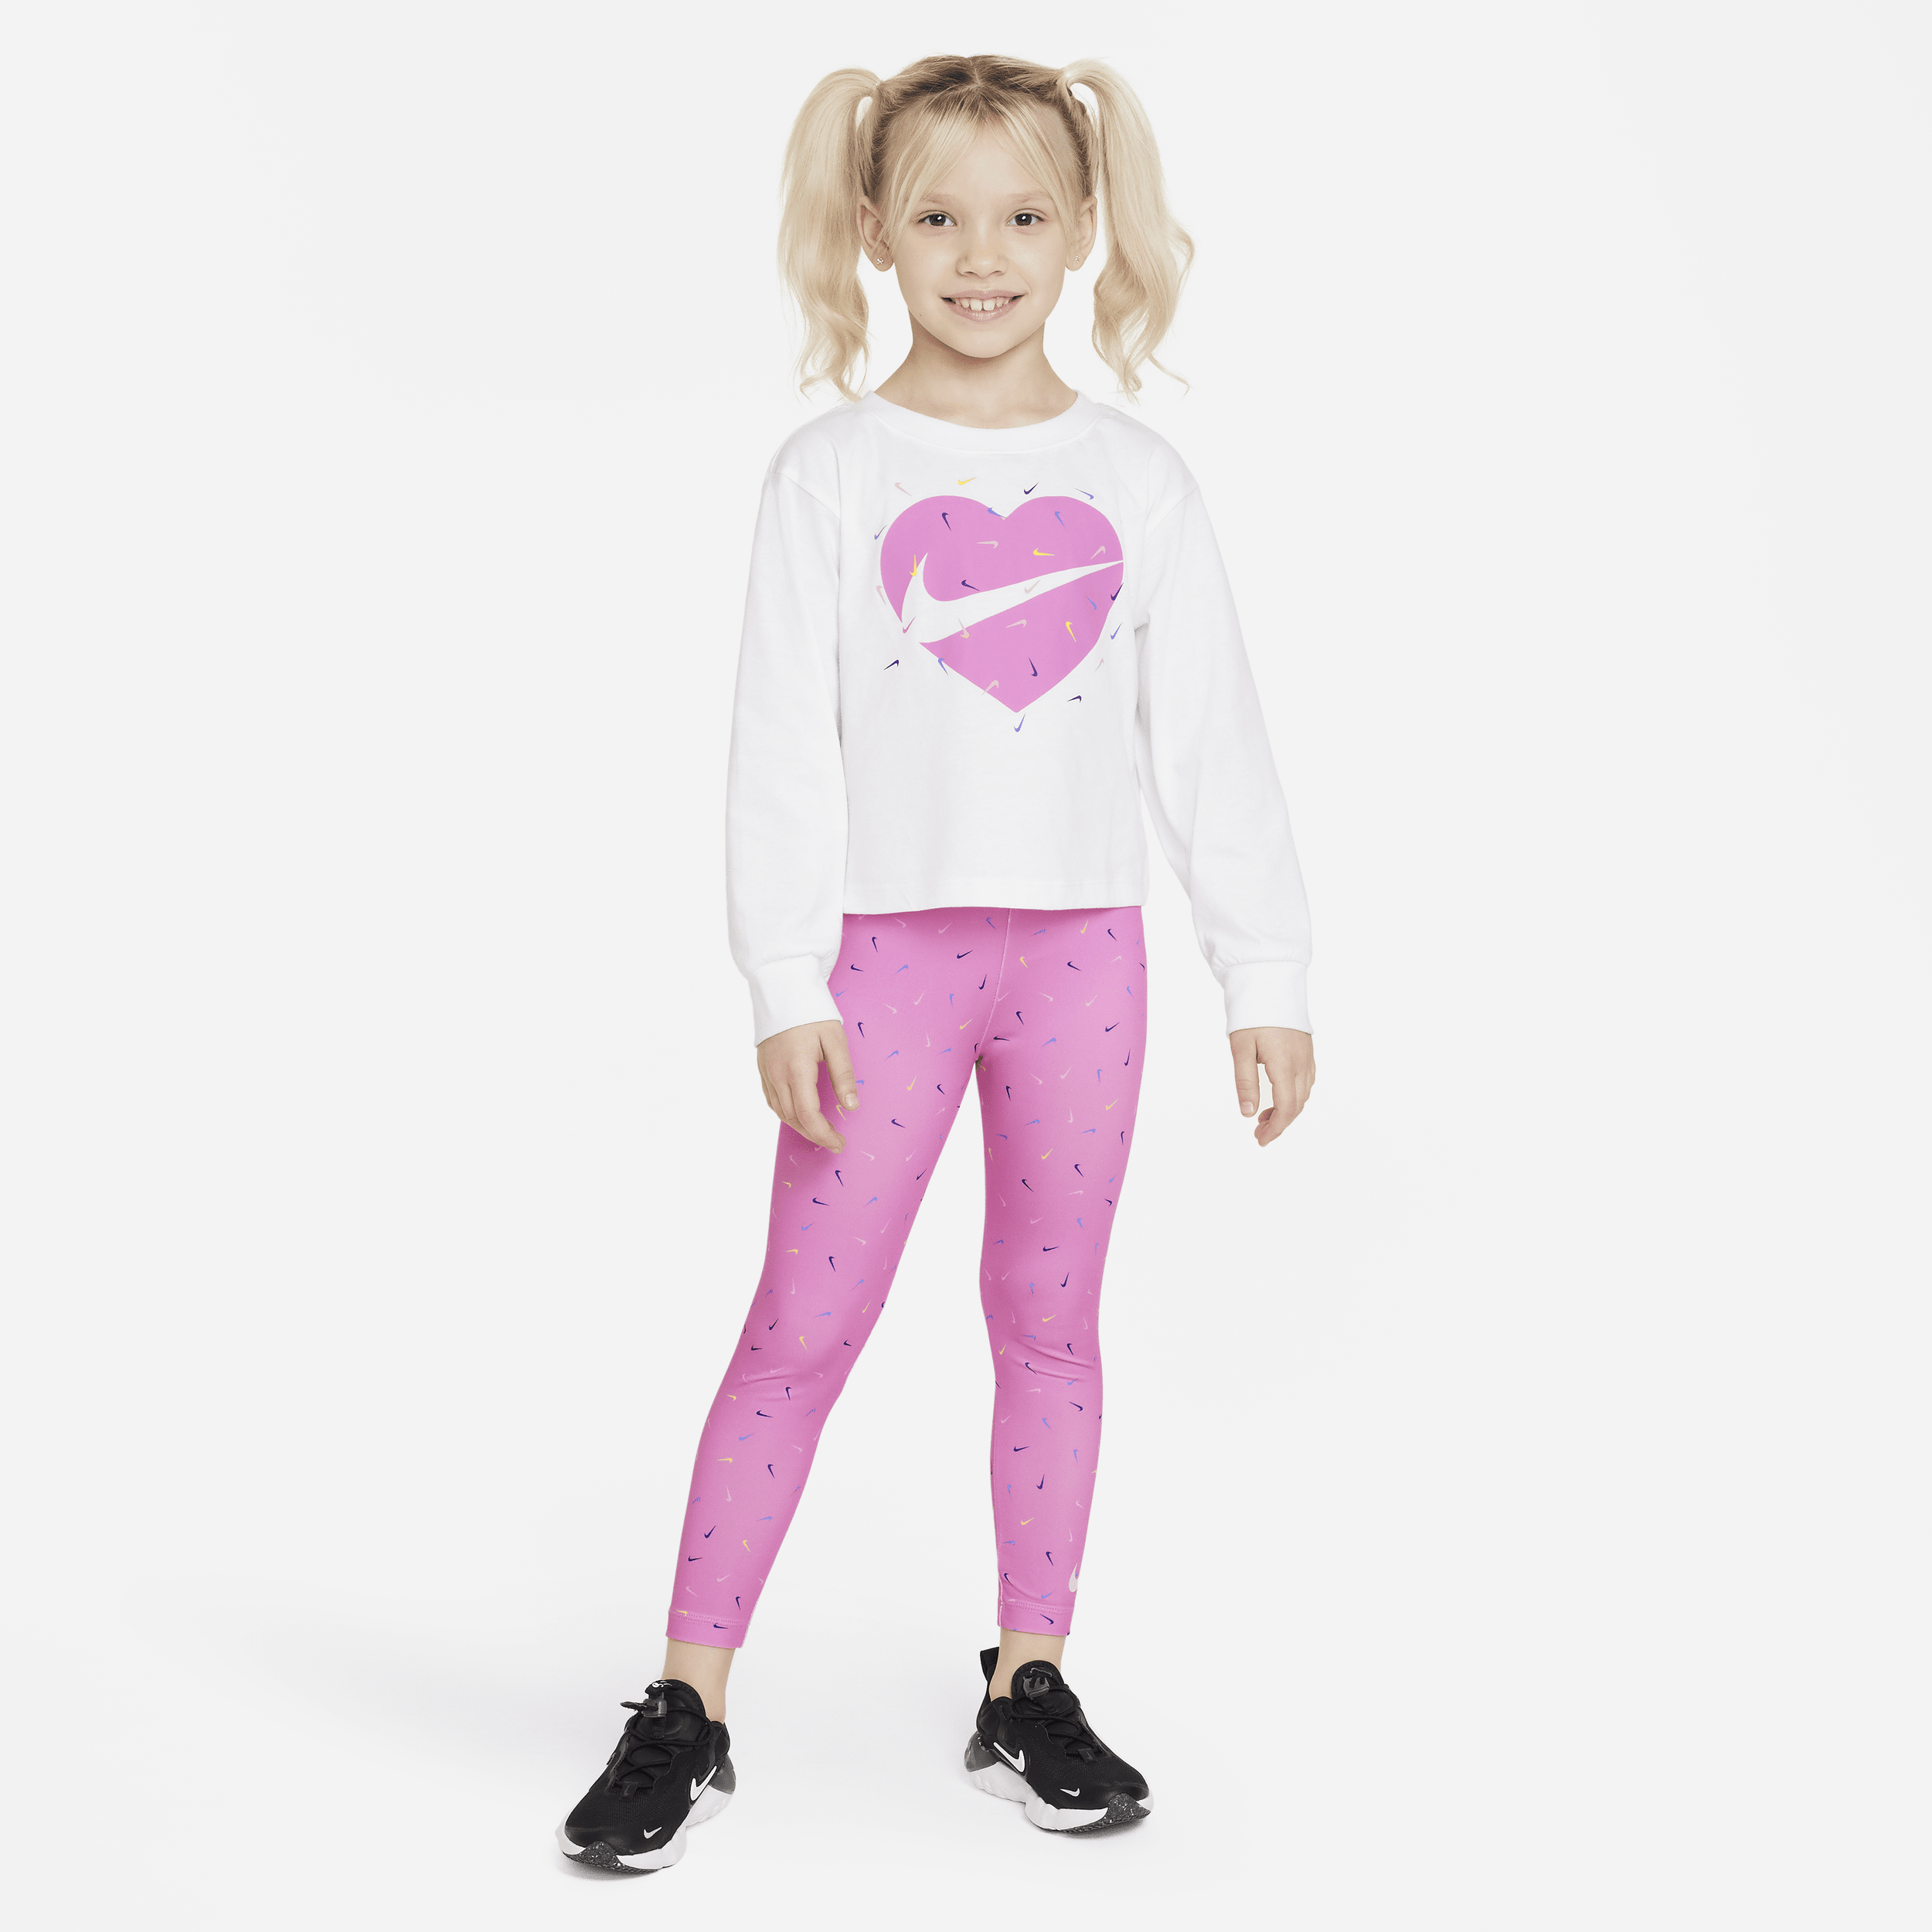 Todelt Nike Graphic Tee and Printed Leggings Set-sæt til mindre børn - Pink